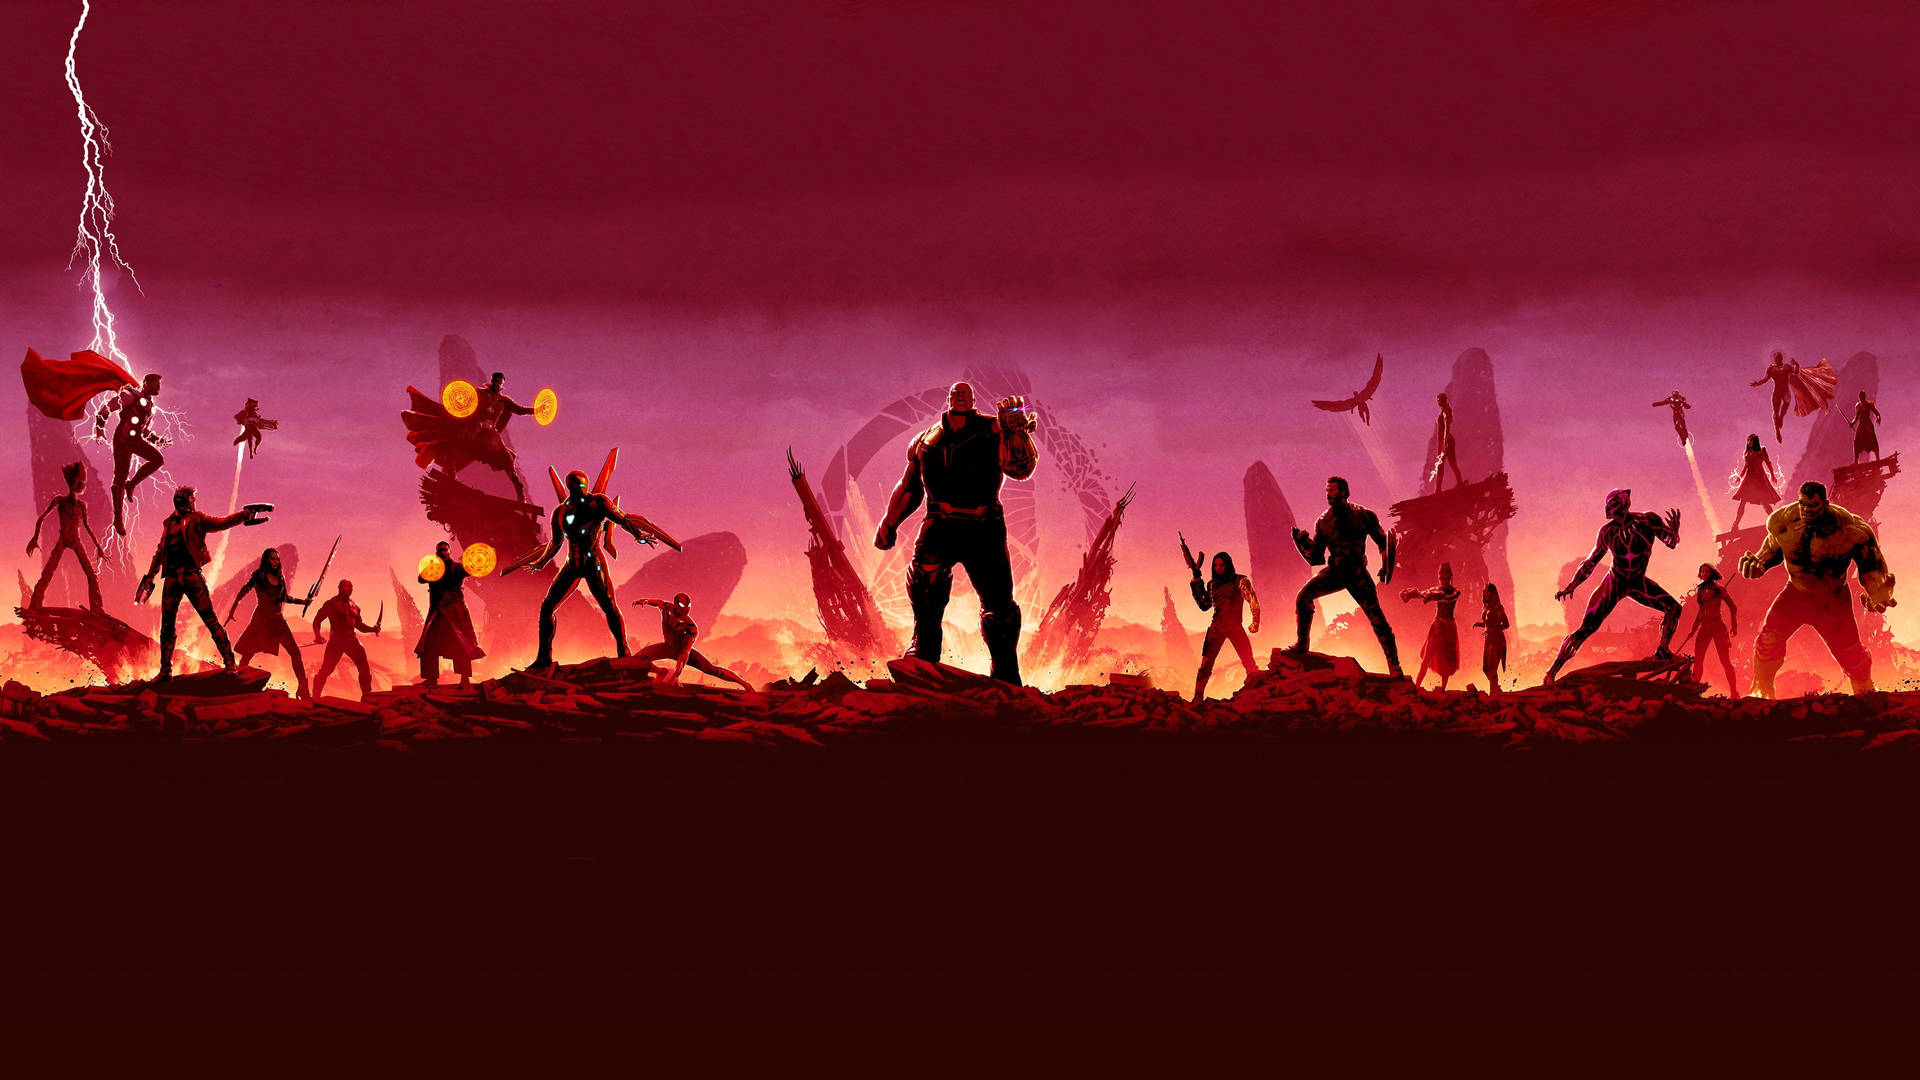 Marvel Avengers Thanos In Infinity War Wallpaper